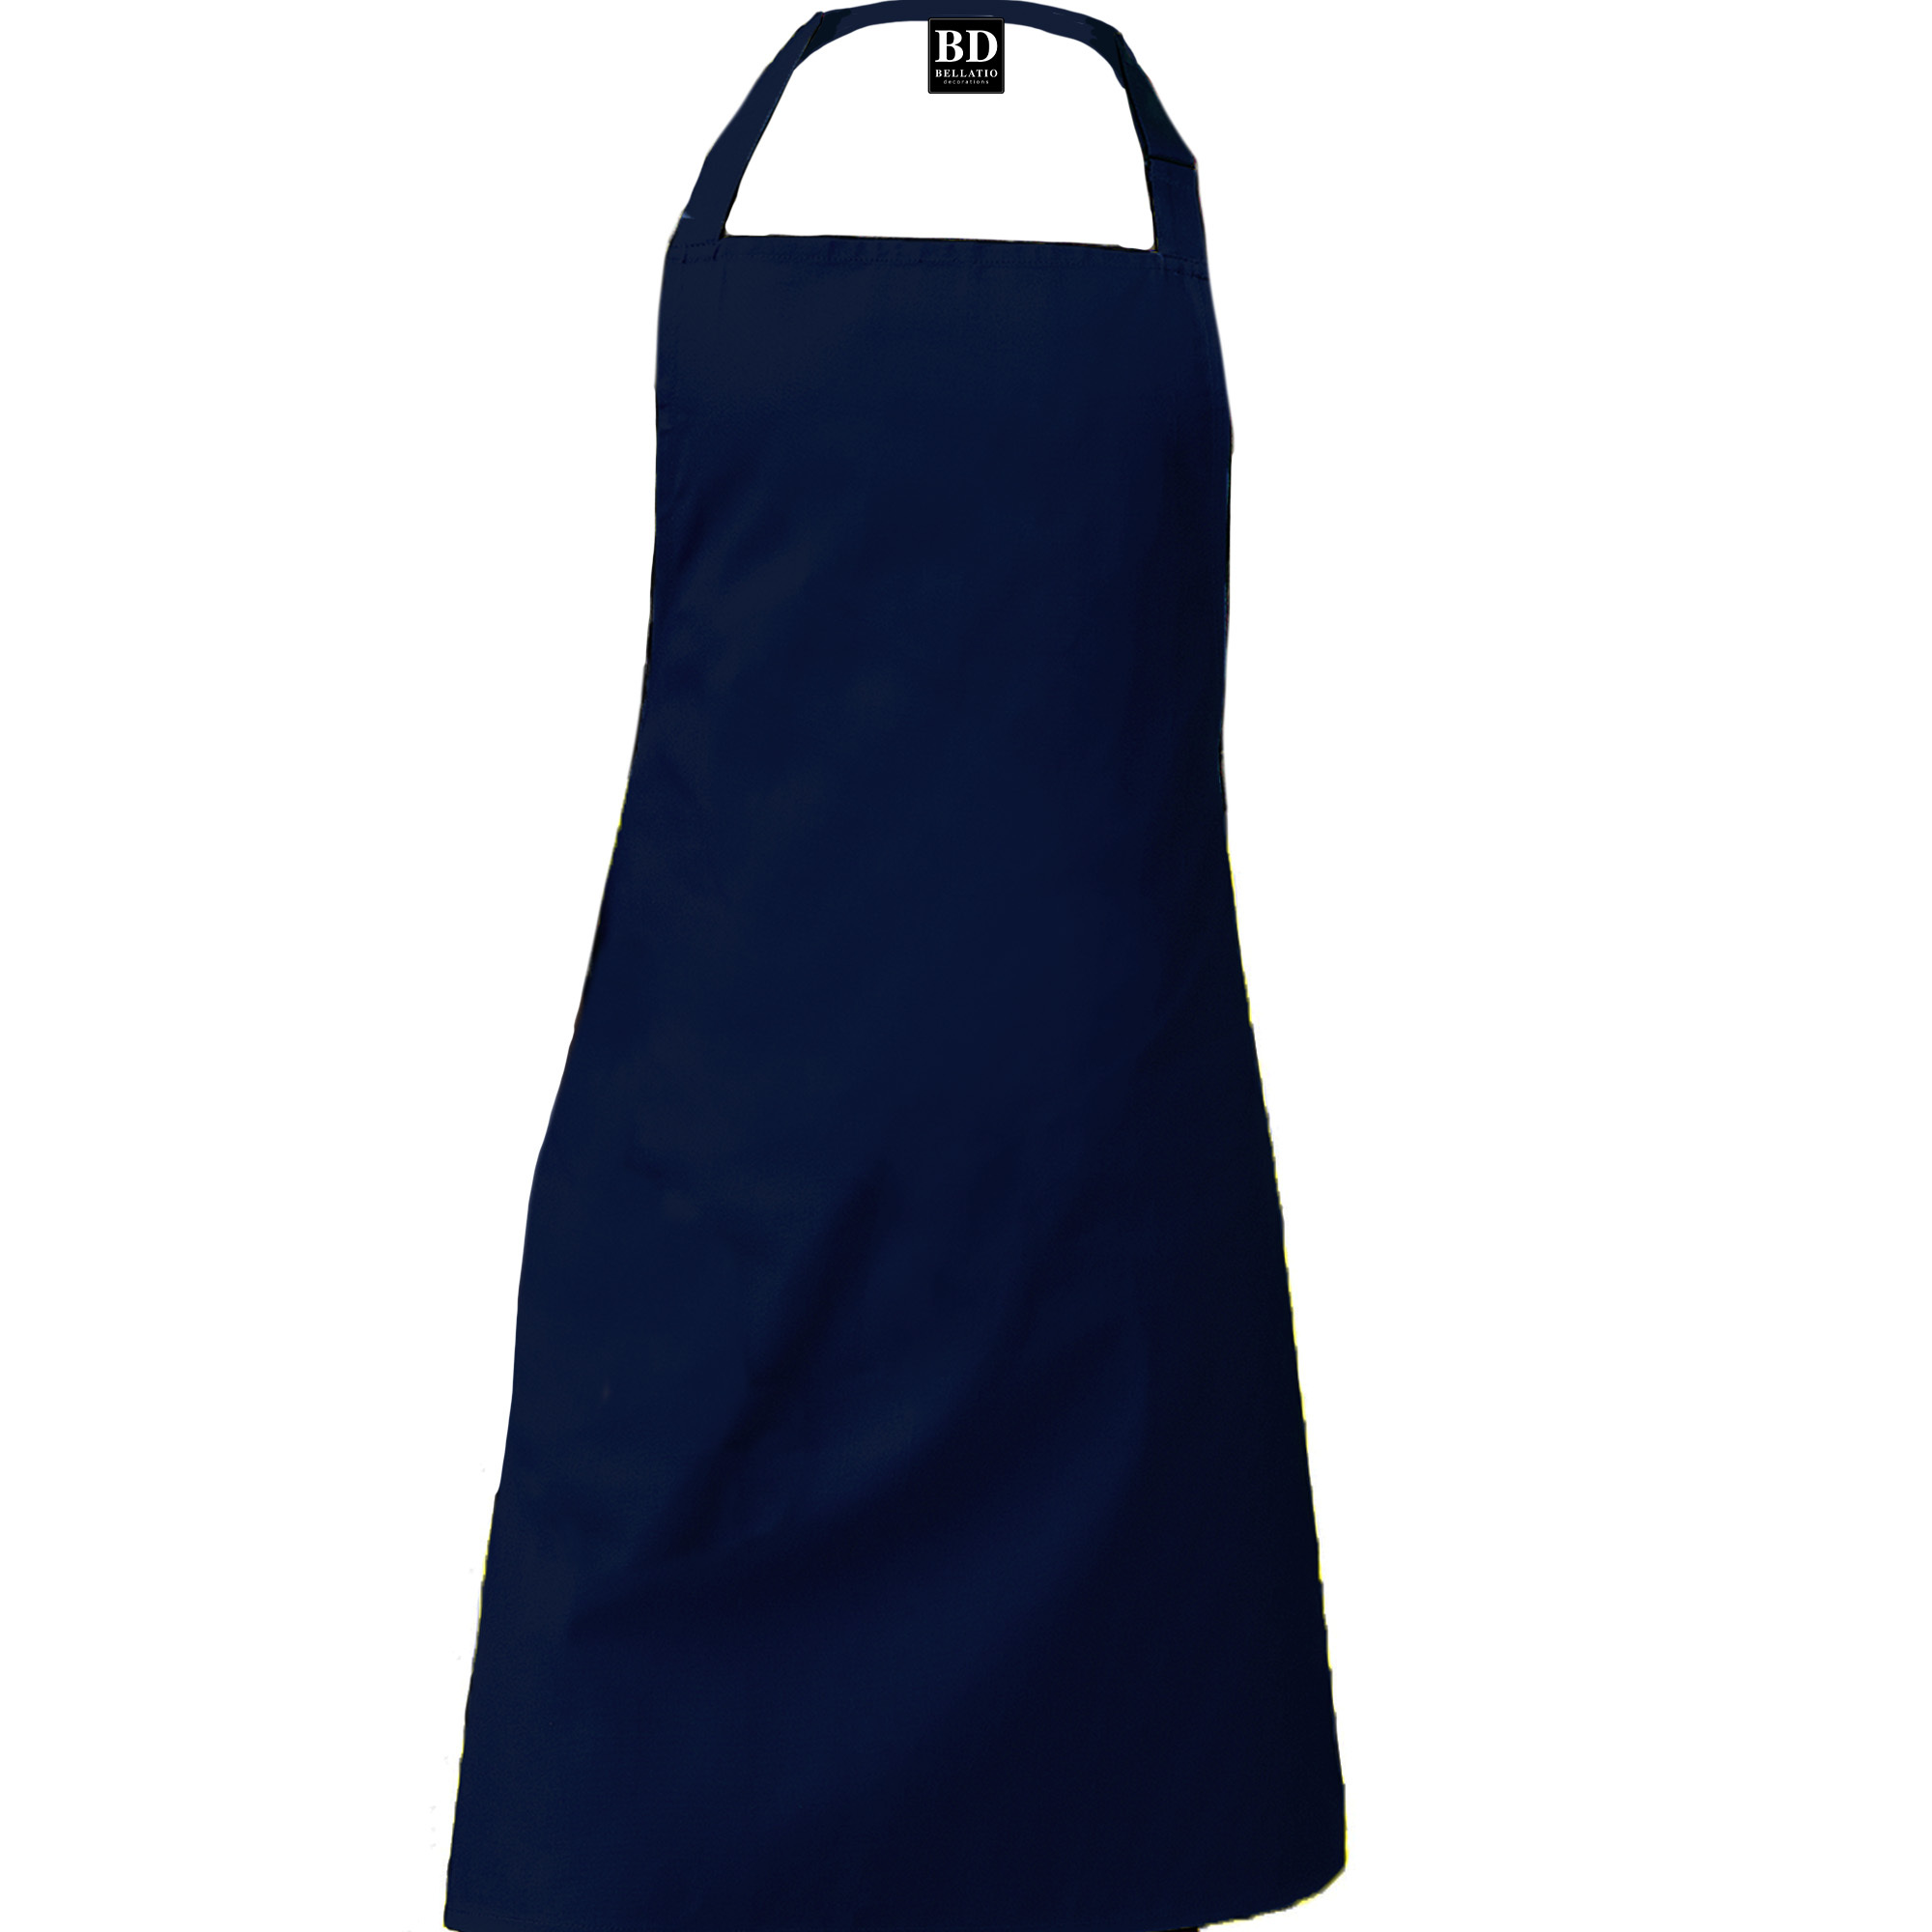 BBQ King barbeque schort / keukenschort kobalt blauw voor heren